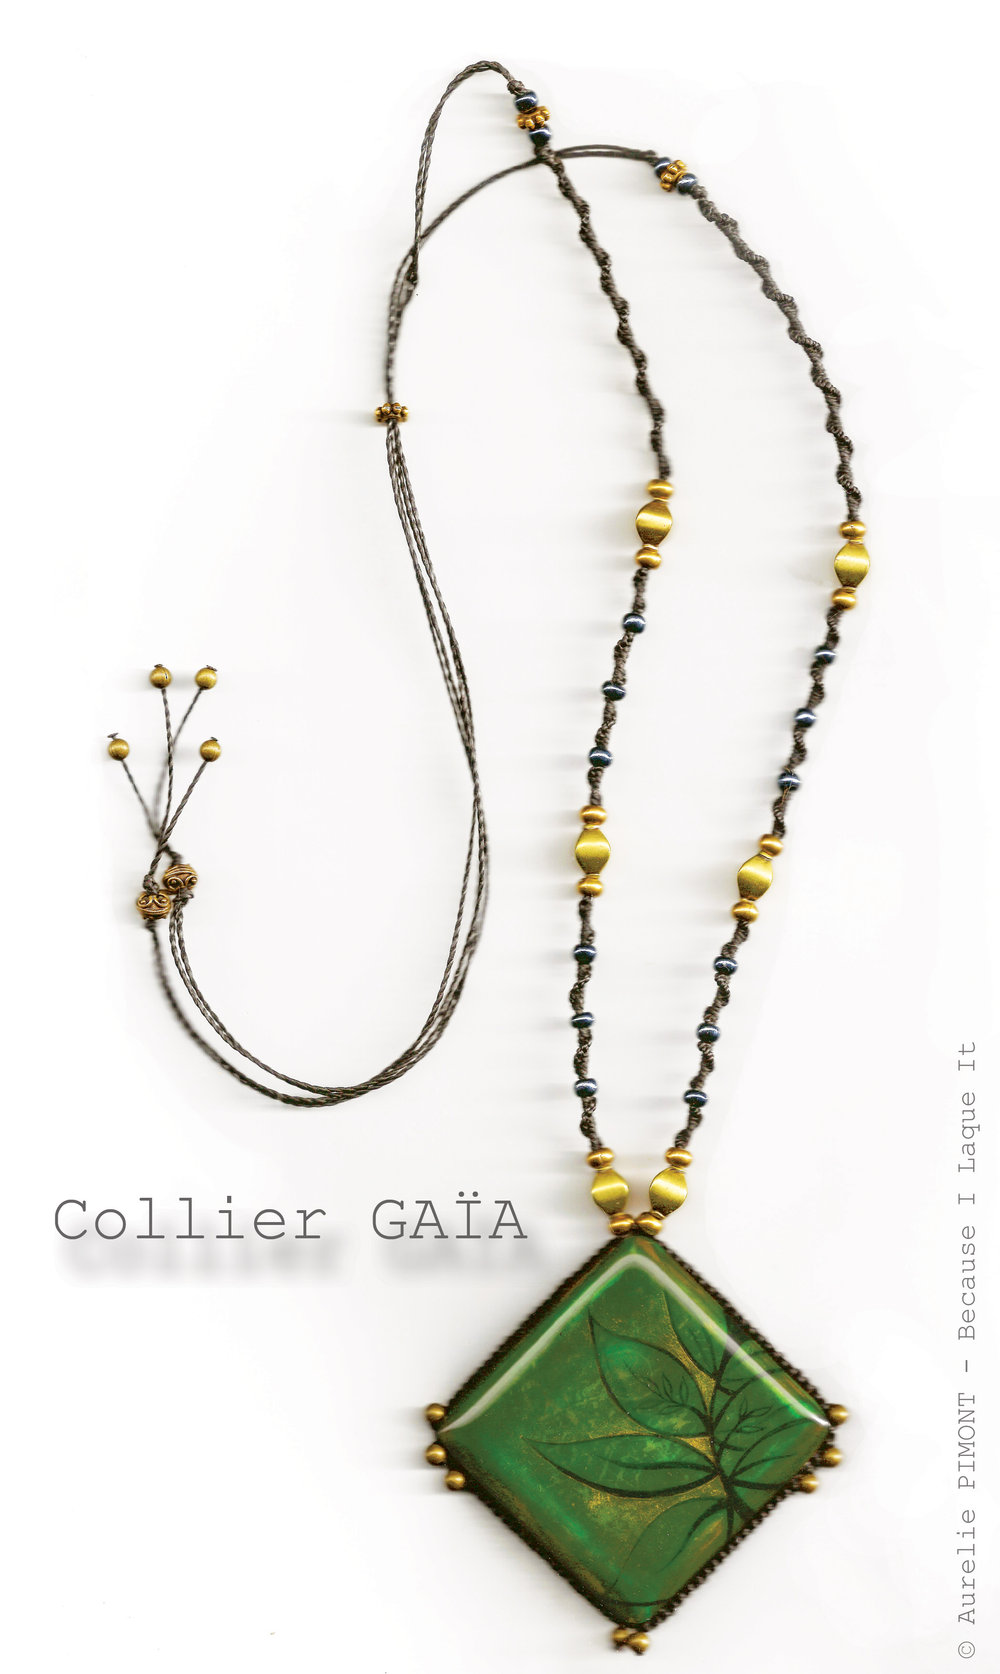 Collier GAÏA<br/><span>Dimensions du carré : 5X5
Longueur du collier réglable : collier classique ou sautoir
Perles en métal couleur bronze/or vieilli</span>